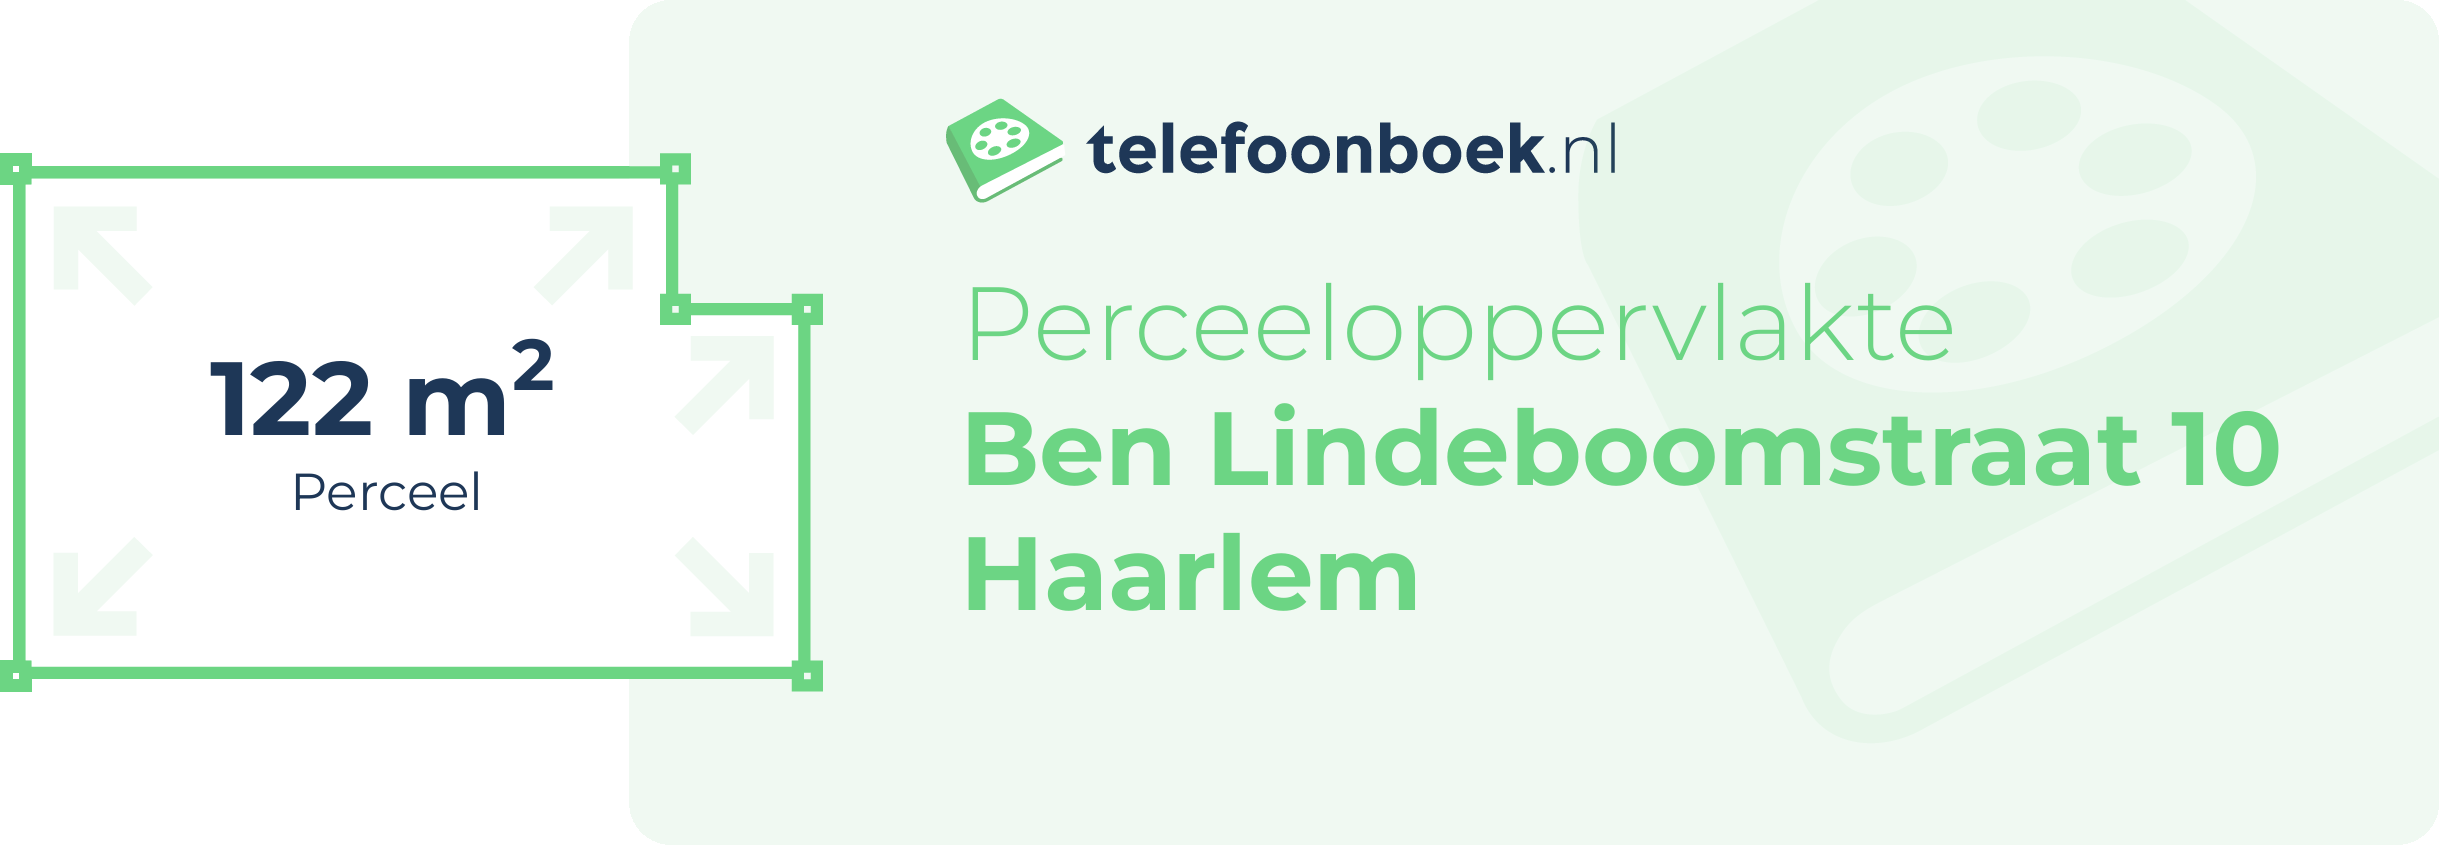 Perceeloppervlakte Ben Lindeboomstraat 10 Haarlem